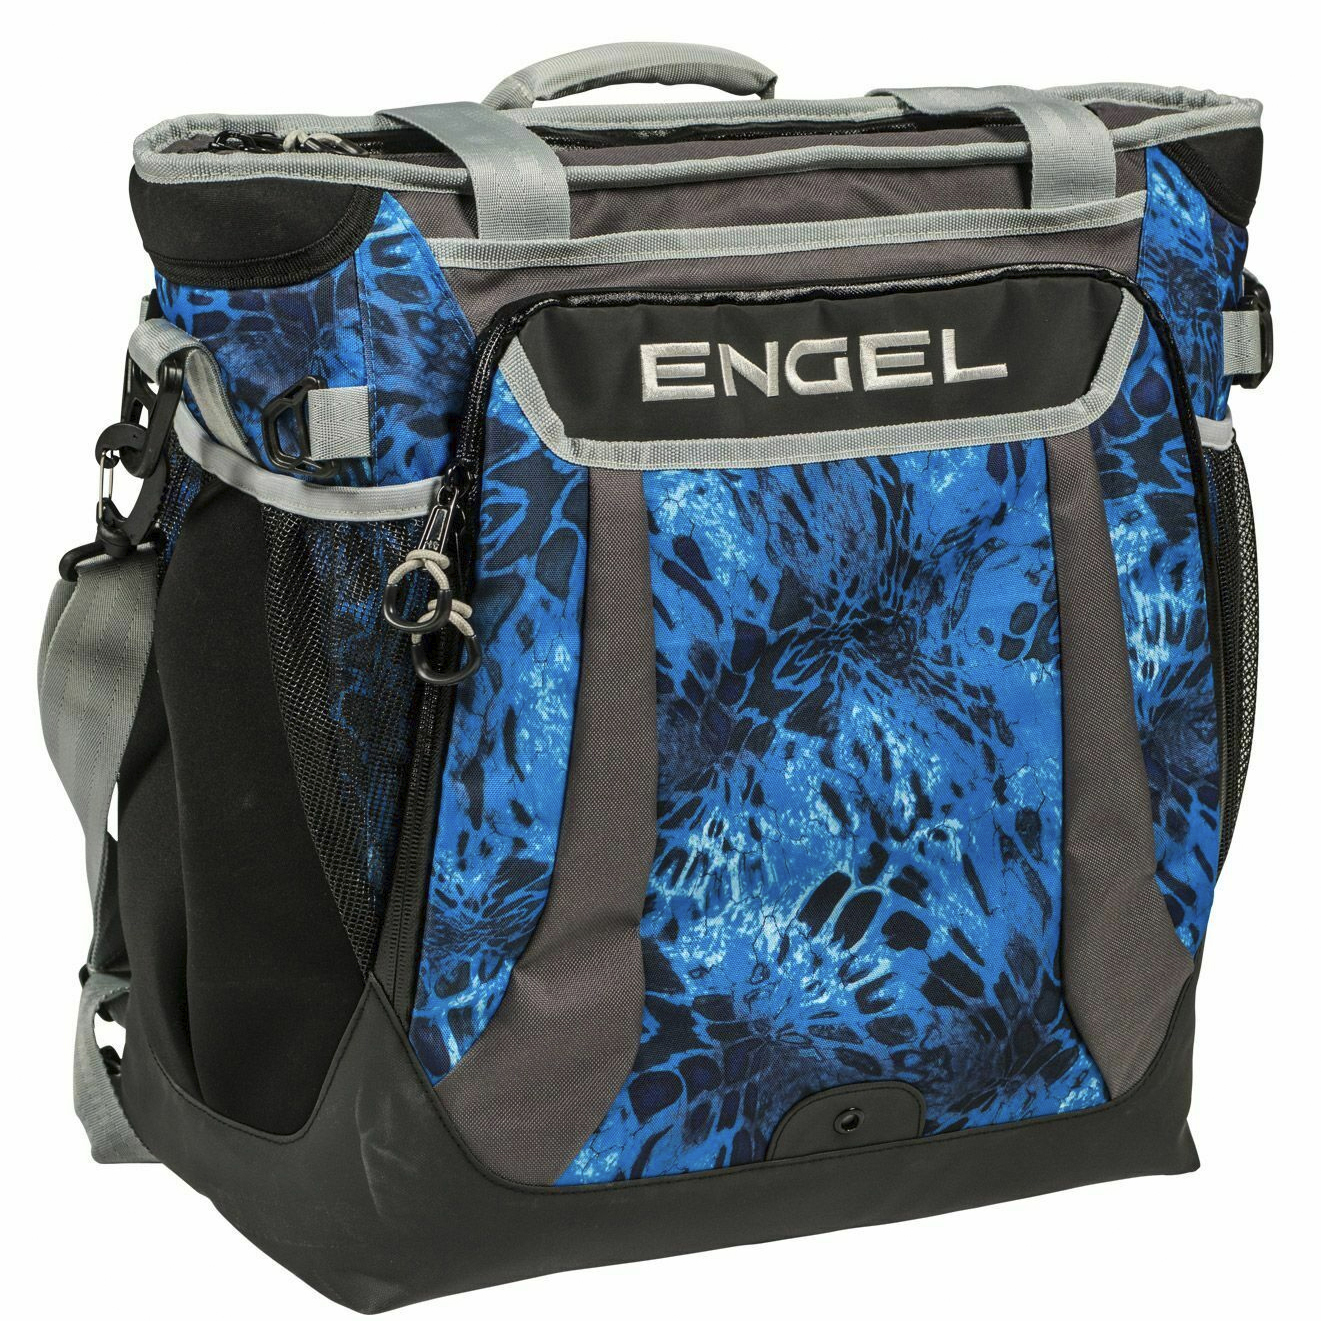 Engel High-Performance Backpack Cooler Bag - Prym1 Shoreline